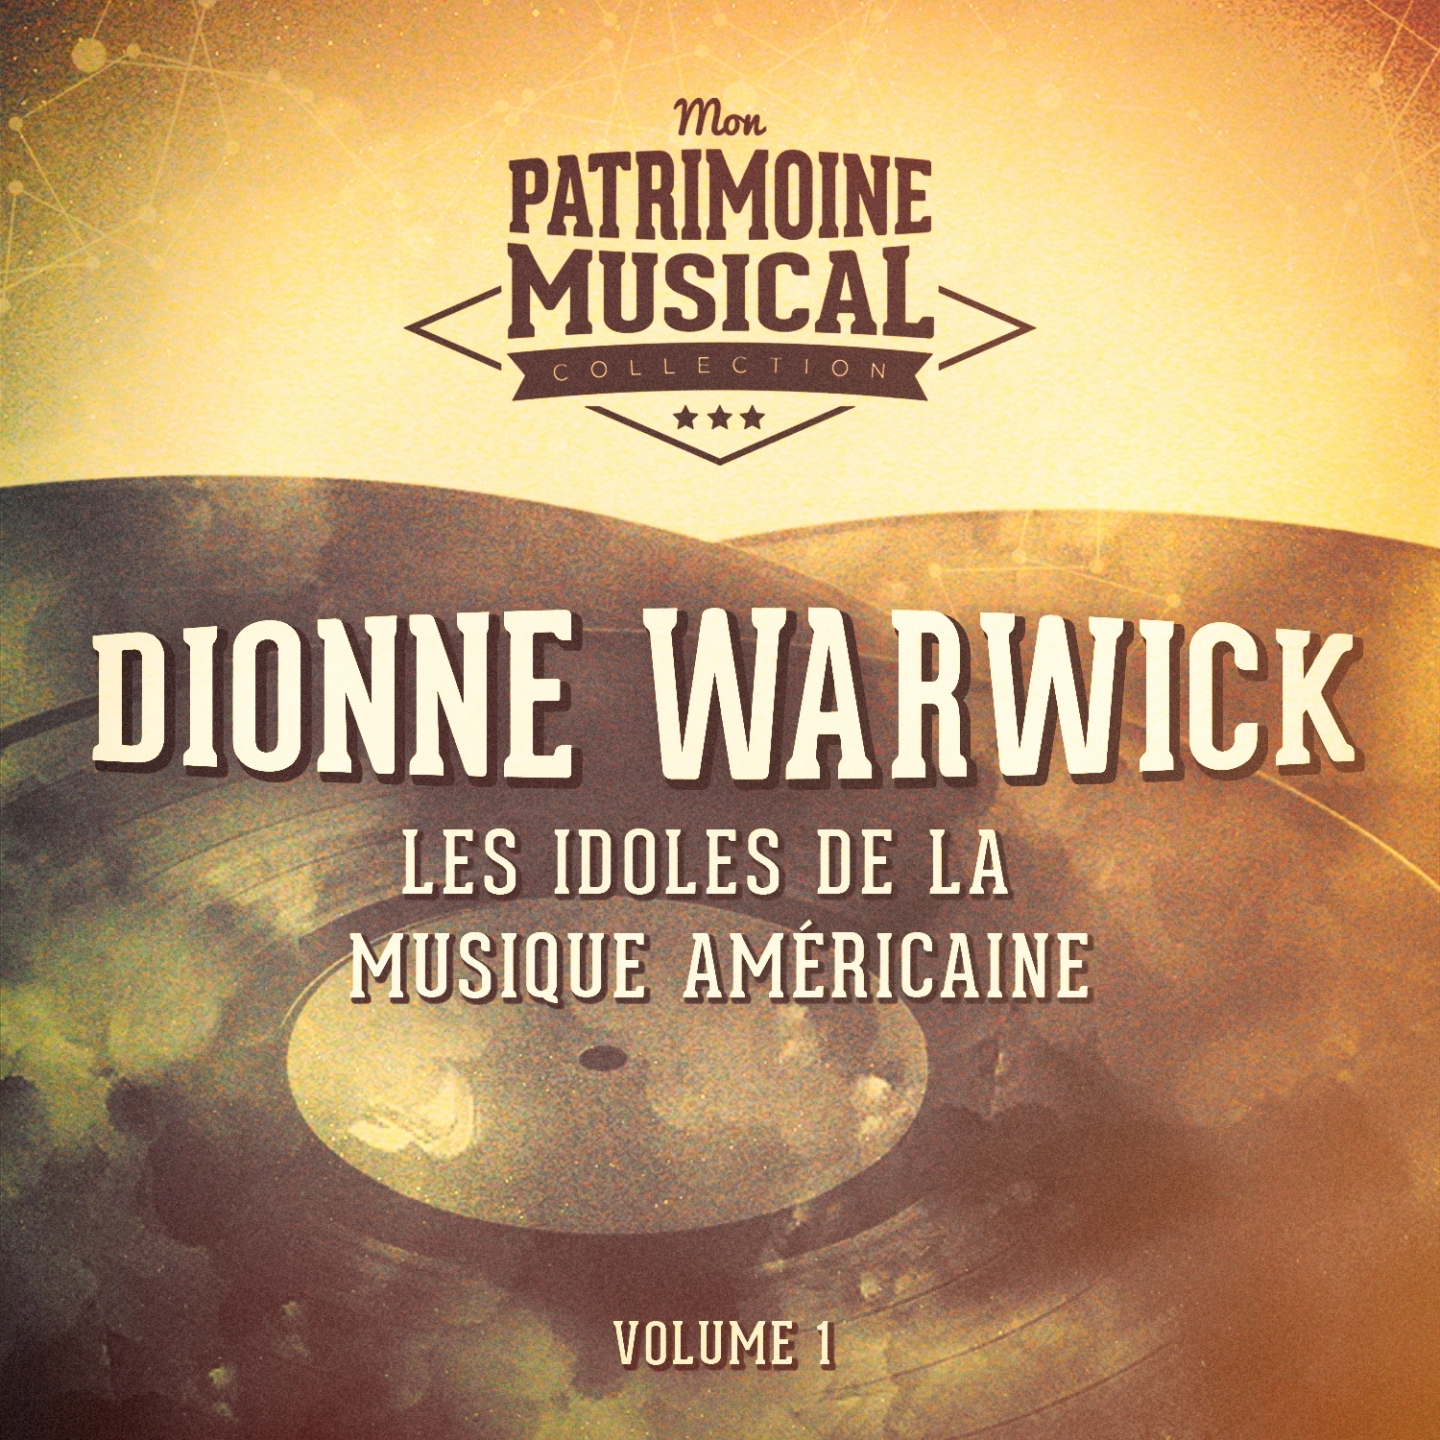 Les Idoles De La Musique Ame ricaine: Dionne Warwick, Vol. 1